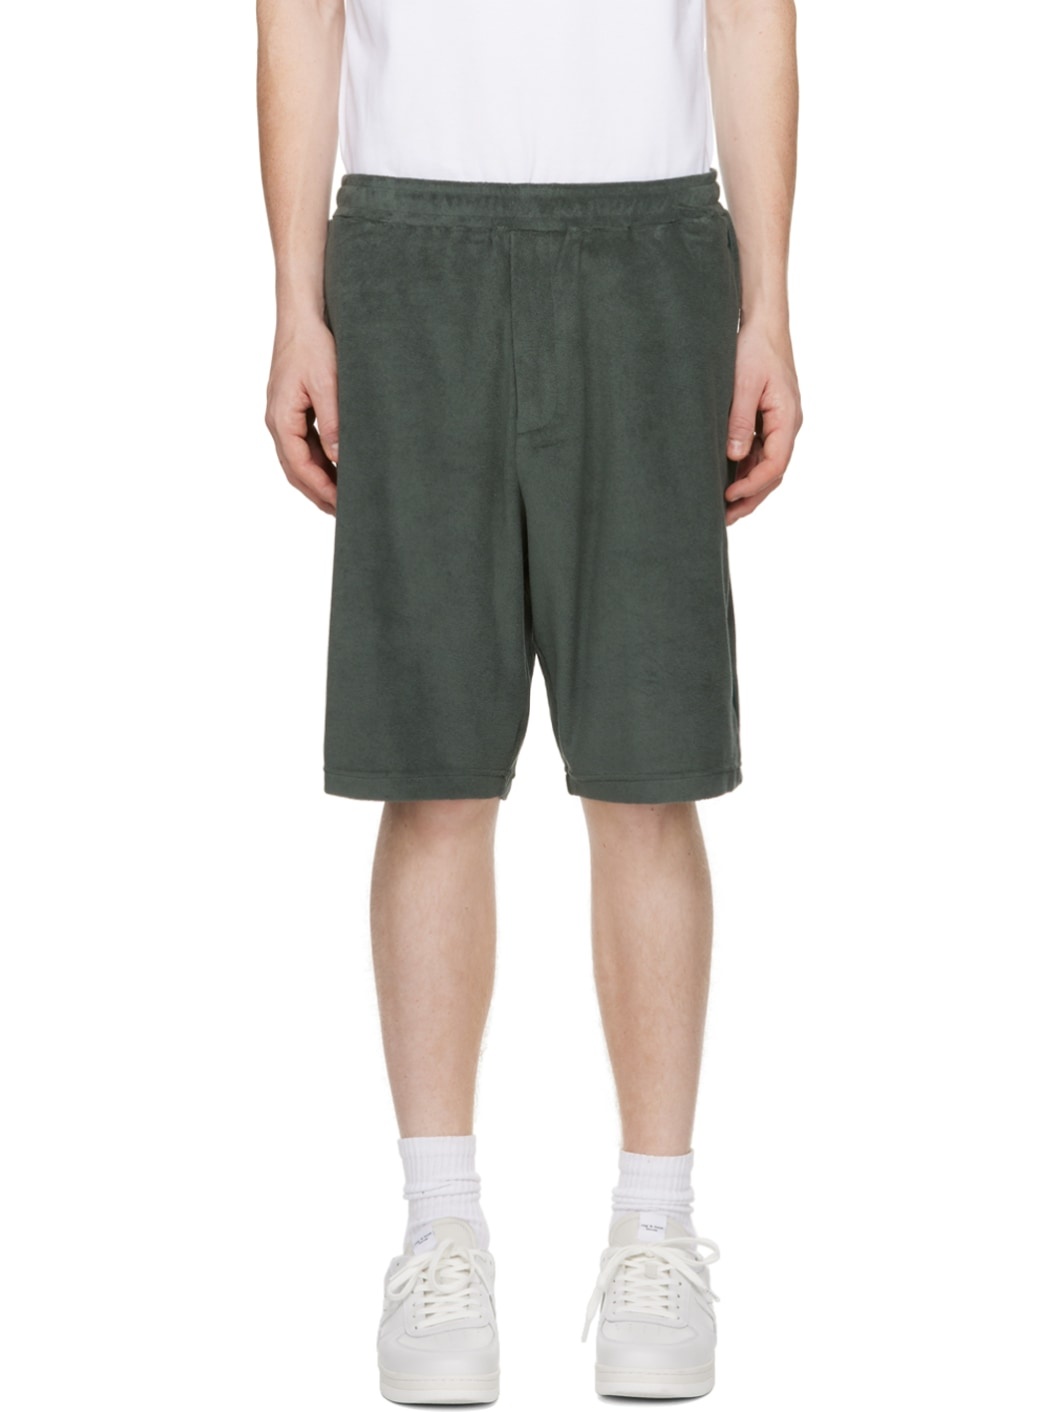 Green Piping Shorts - 1